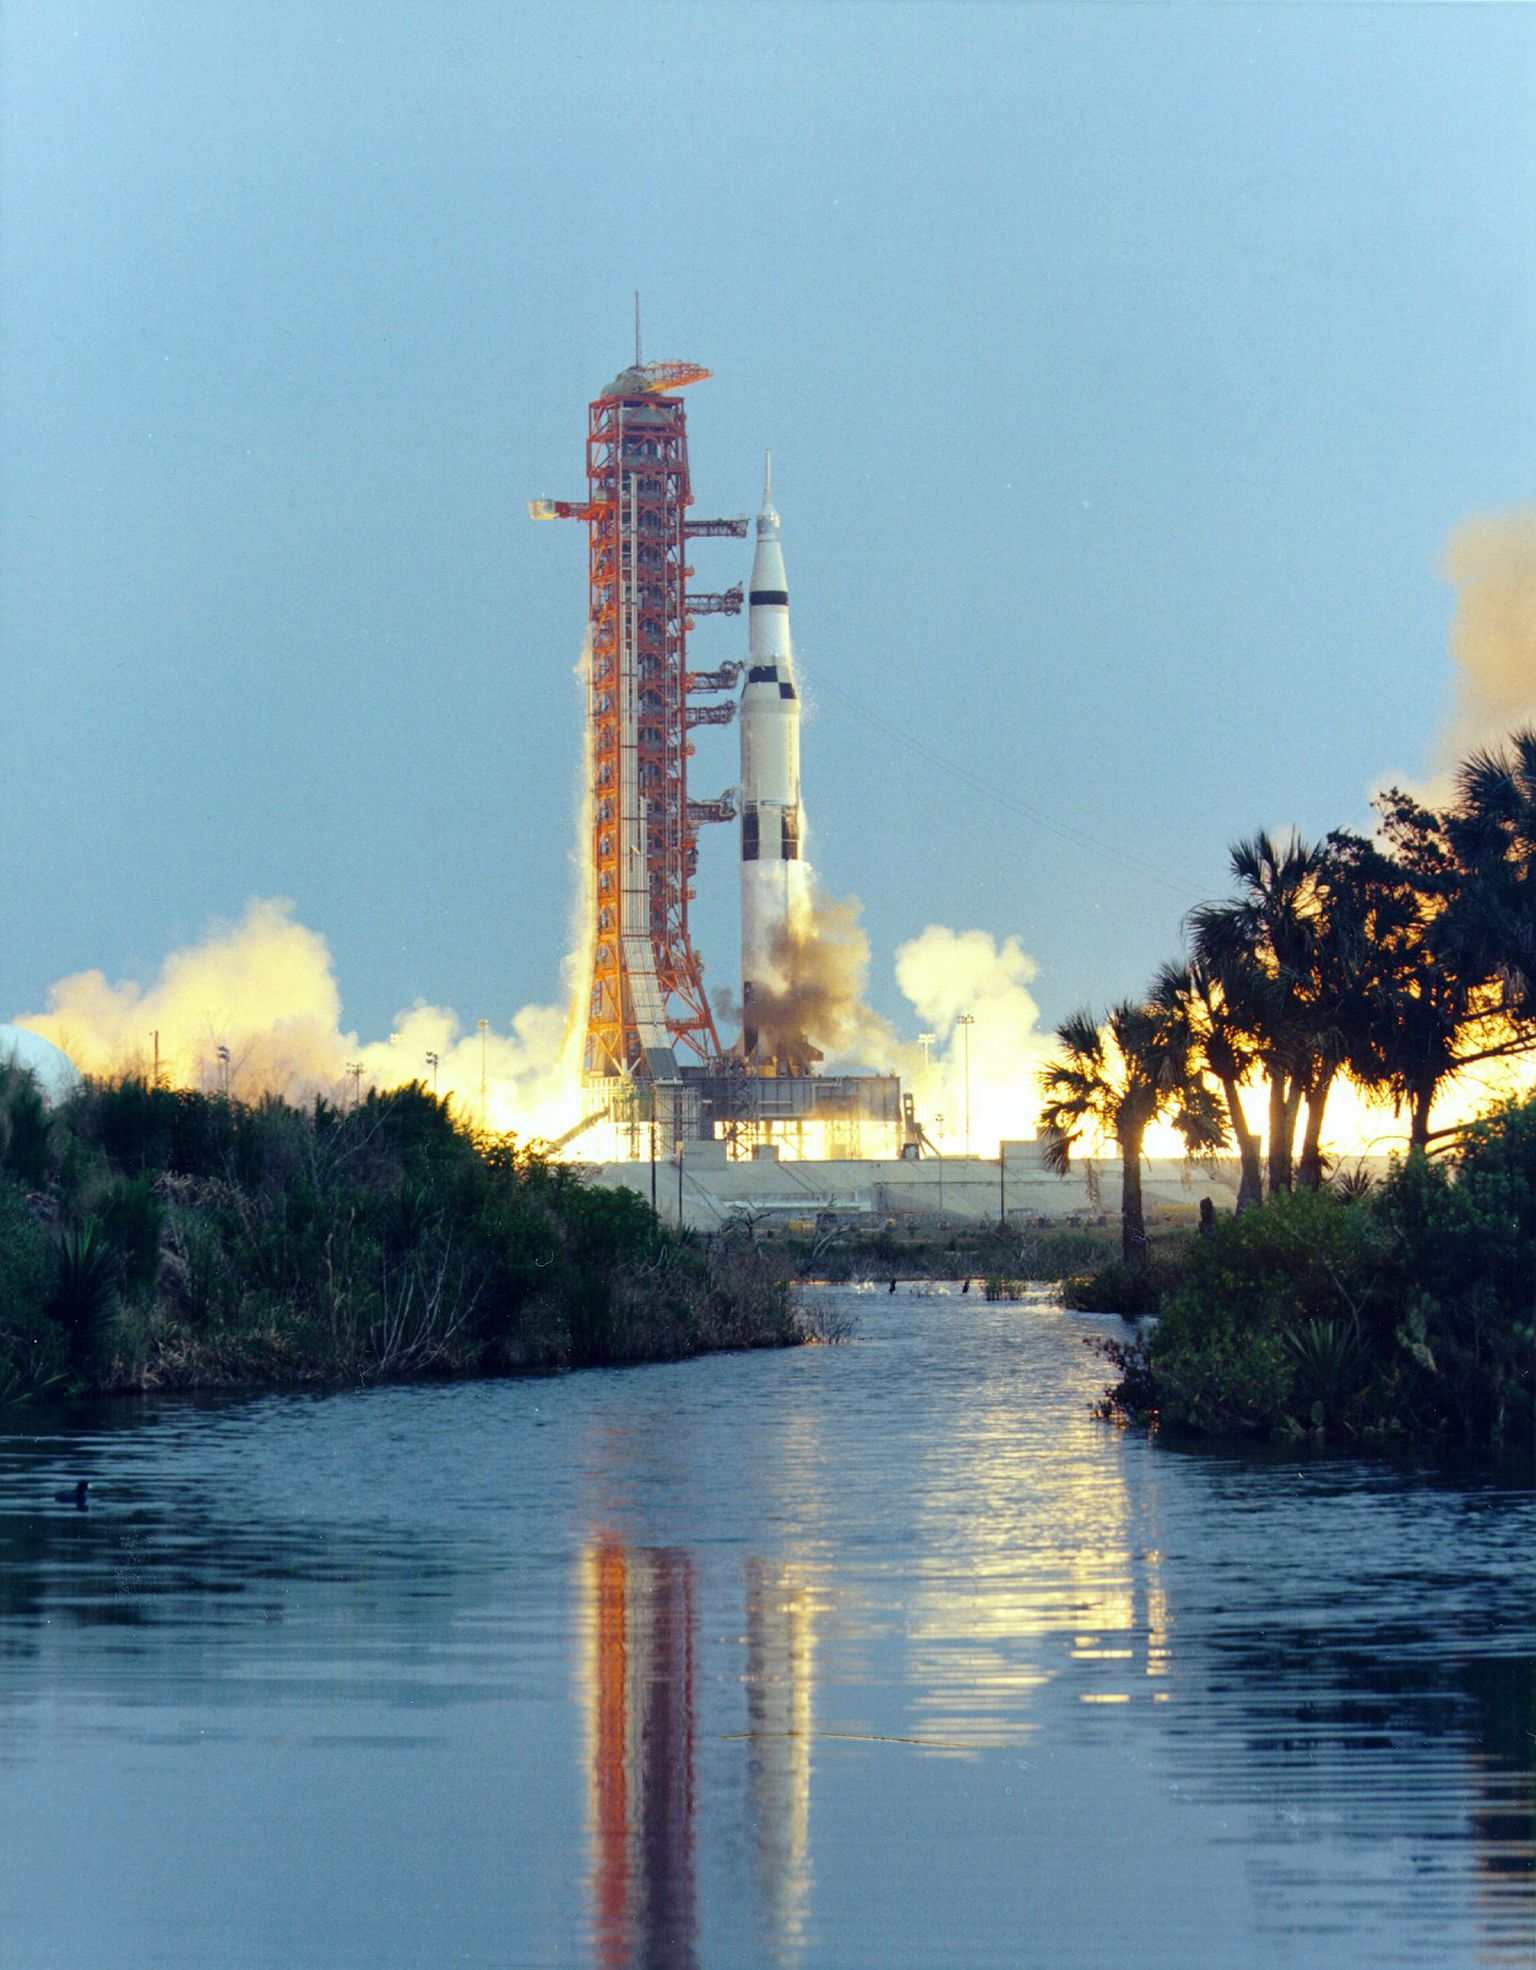 Saturn V rakett tõusis 11. aprillil 1970 õhku Floridast Kennedy kosmosekeskusest, pardal Apollo 13 missiooni astronaudid